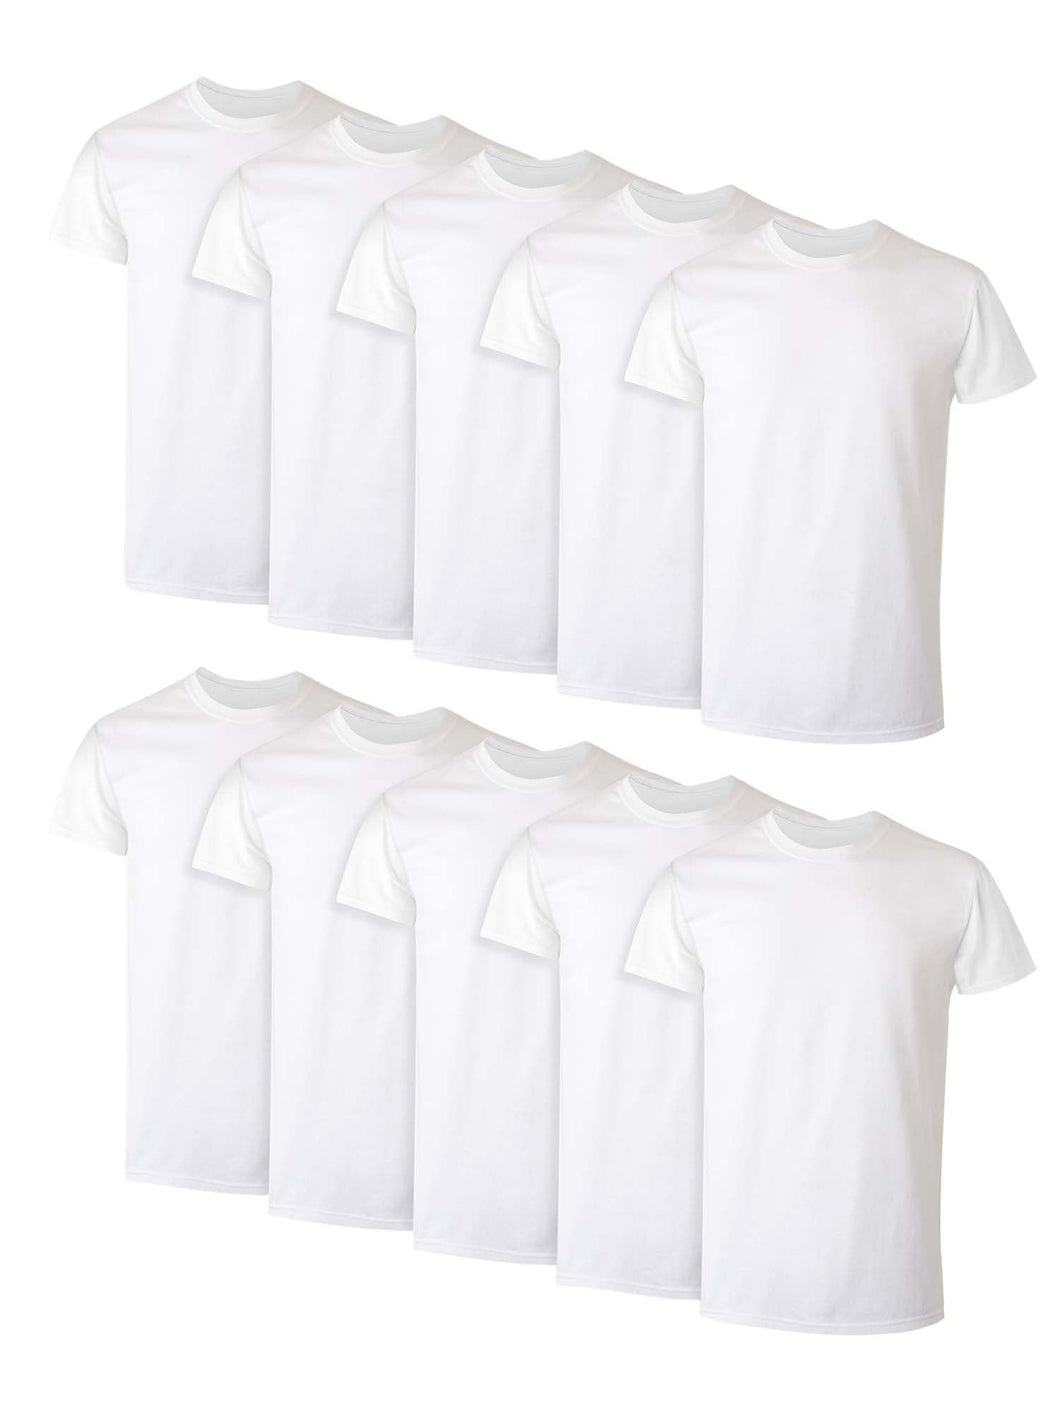 10 Pack Hanes Men's Super Value Pack White Crew T-Shirt - slvhasitall